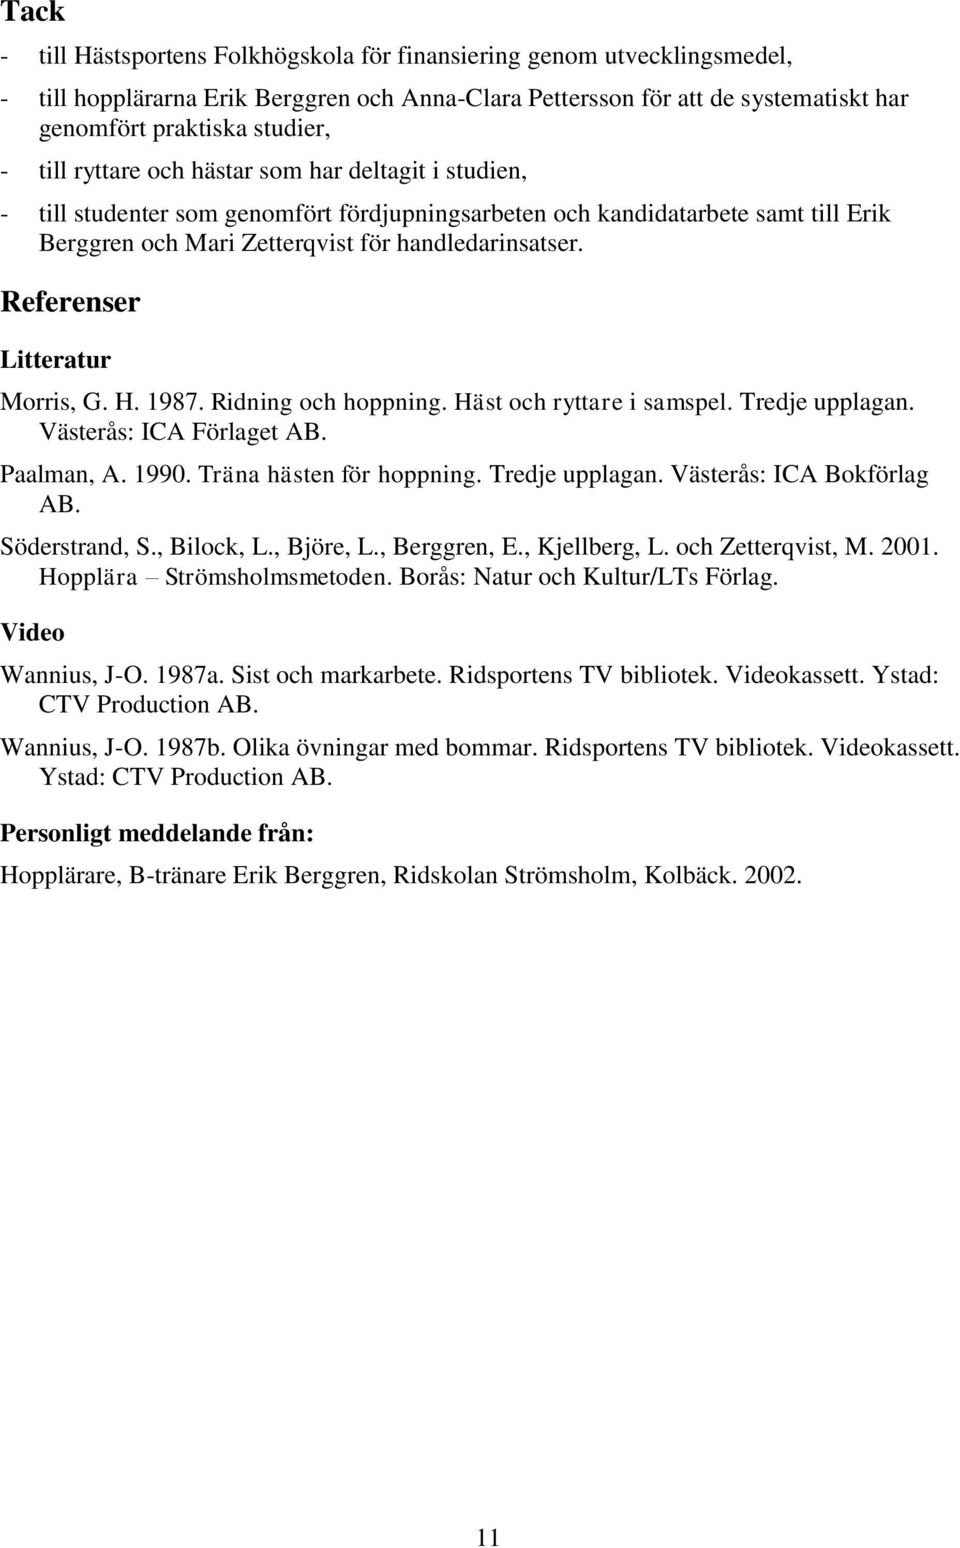 Referenser Litteratur Morris, G. H. 1987. Ridning och hoppning. Häst och ryttare i samspel. Tredje upplagan. Västerås: ICA Förlaget AB. Paalman, A. 1990. Träna hästen för hoppning. Tredje upplagan. Västerås: ICA Bokförlag AB.